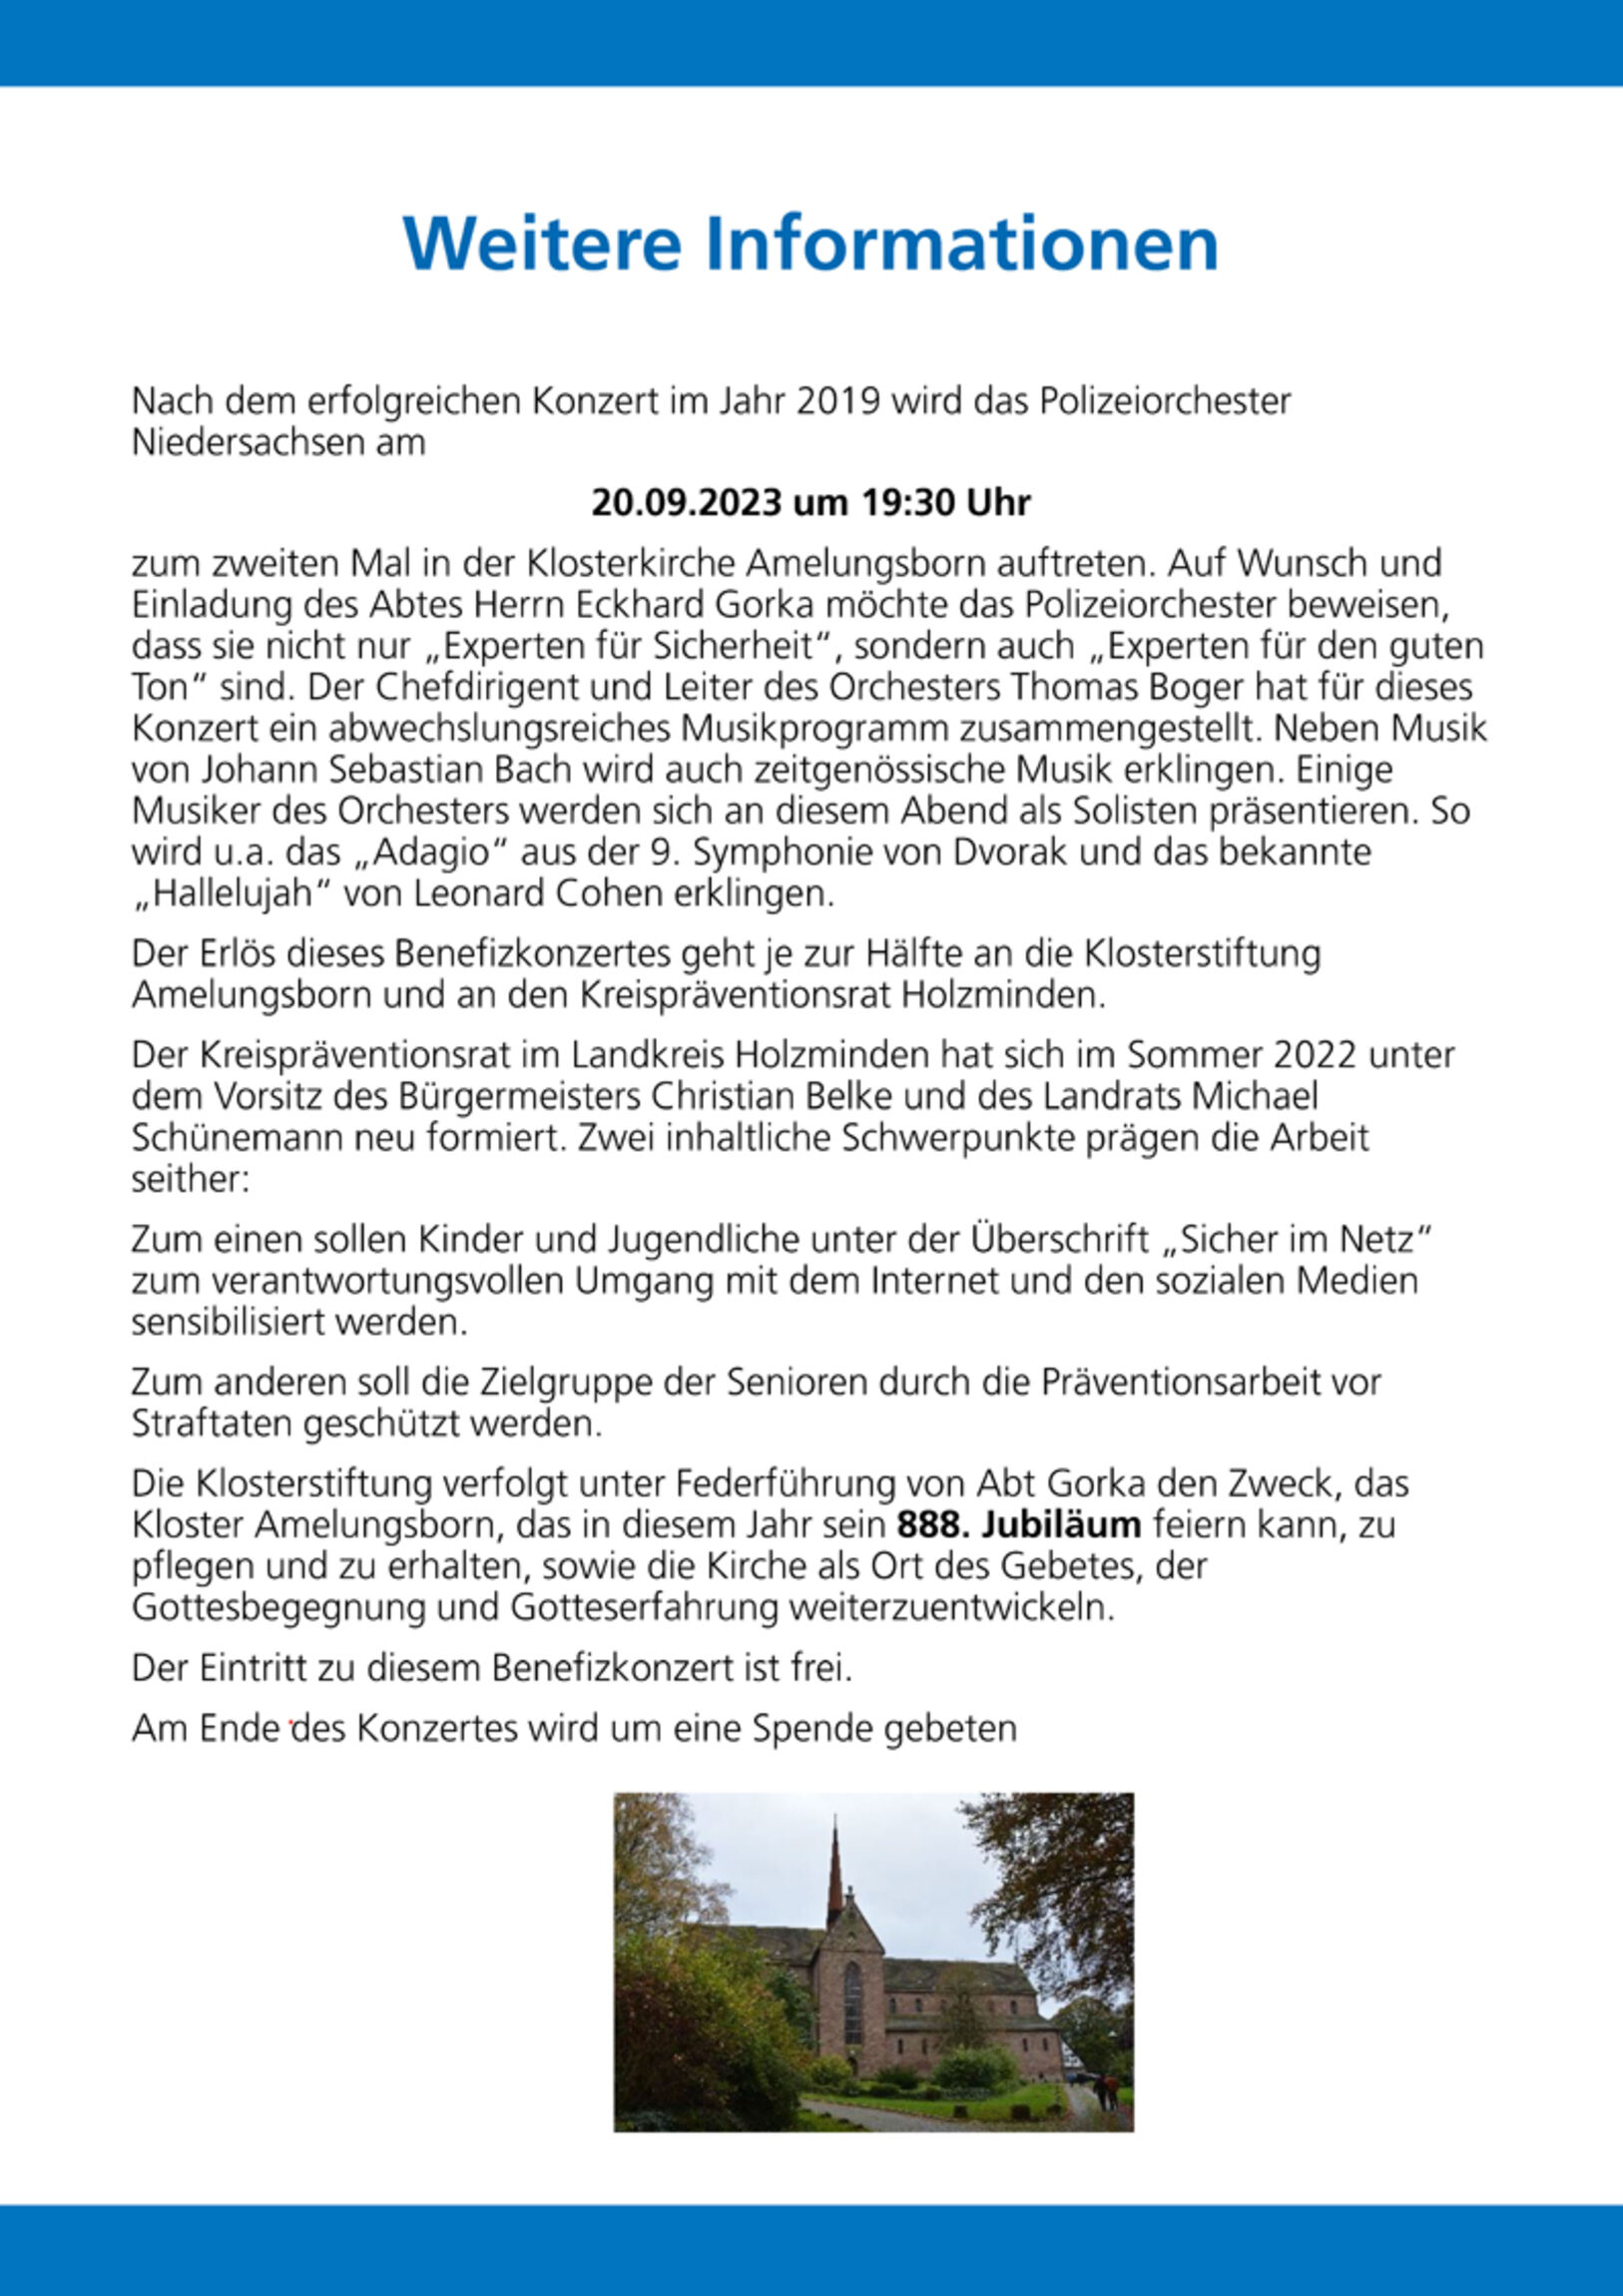 Zusatzinformation zum Konzert am 20. September 2023 in Amelungsborn